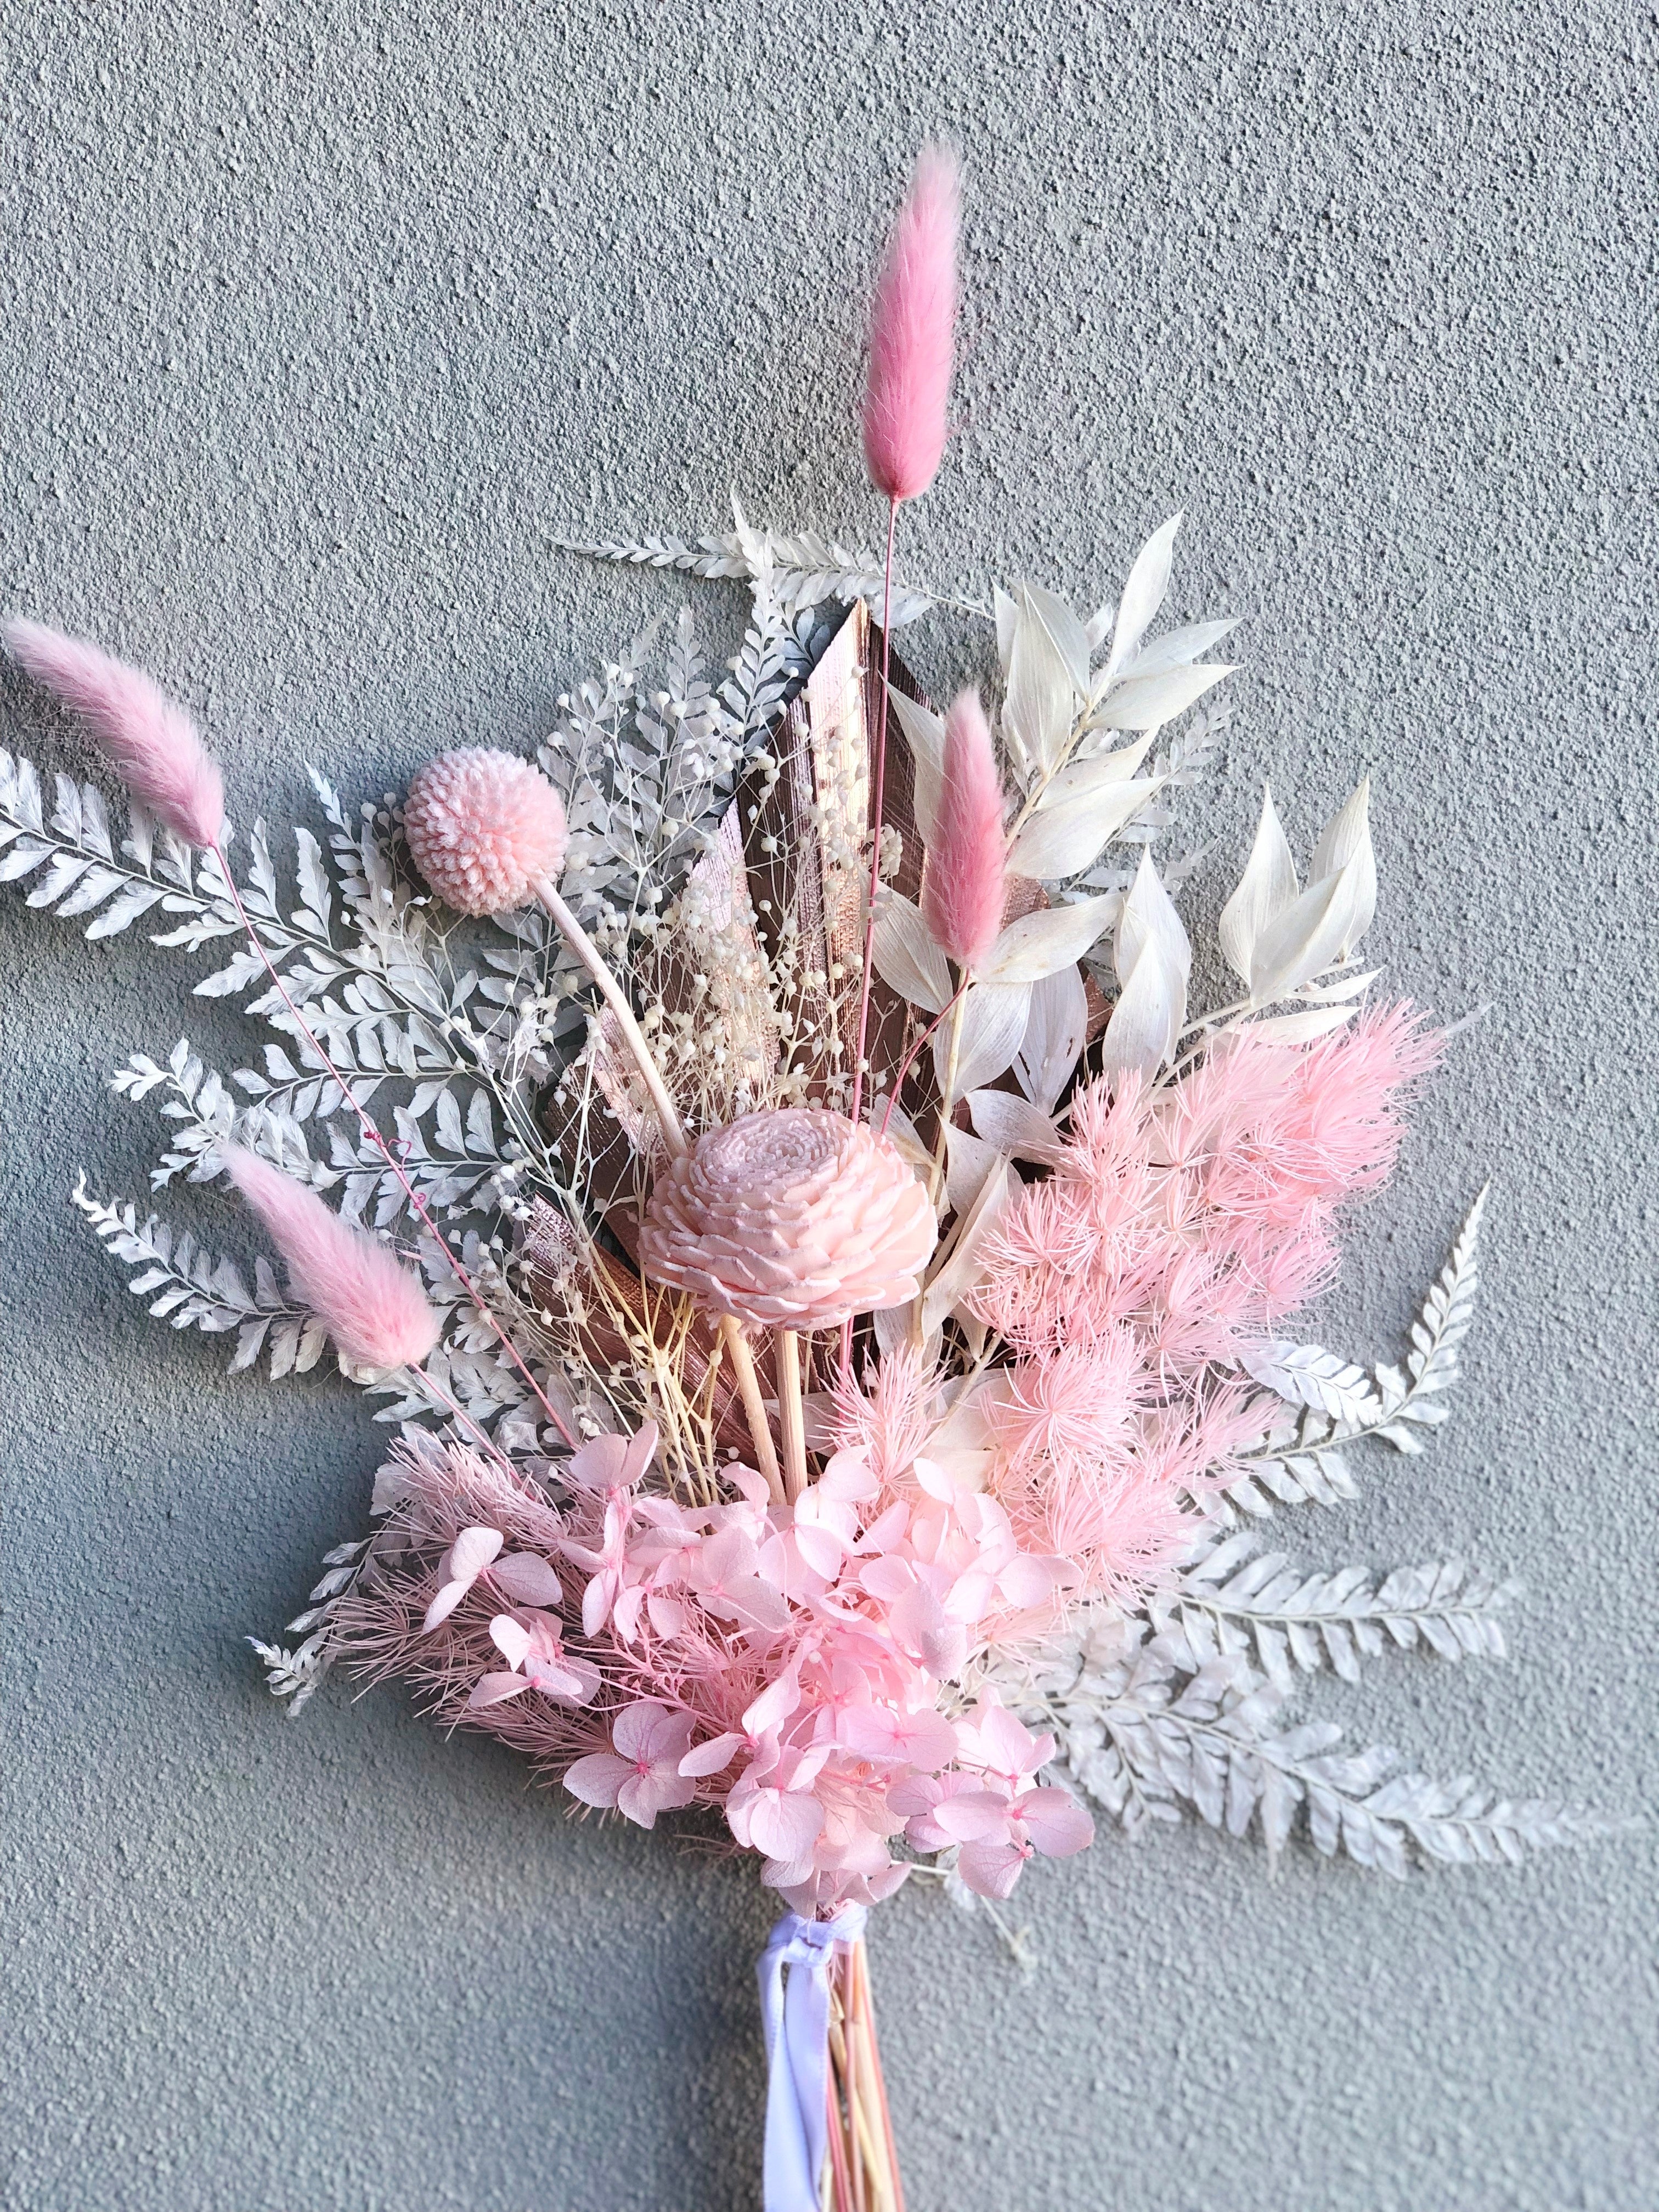 Dried Flowers - Pretty Pinks